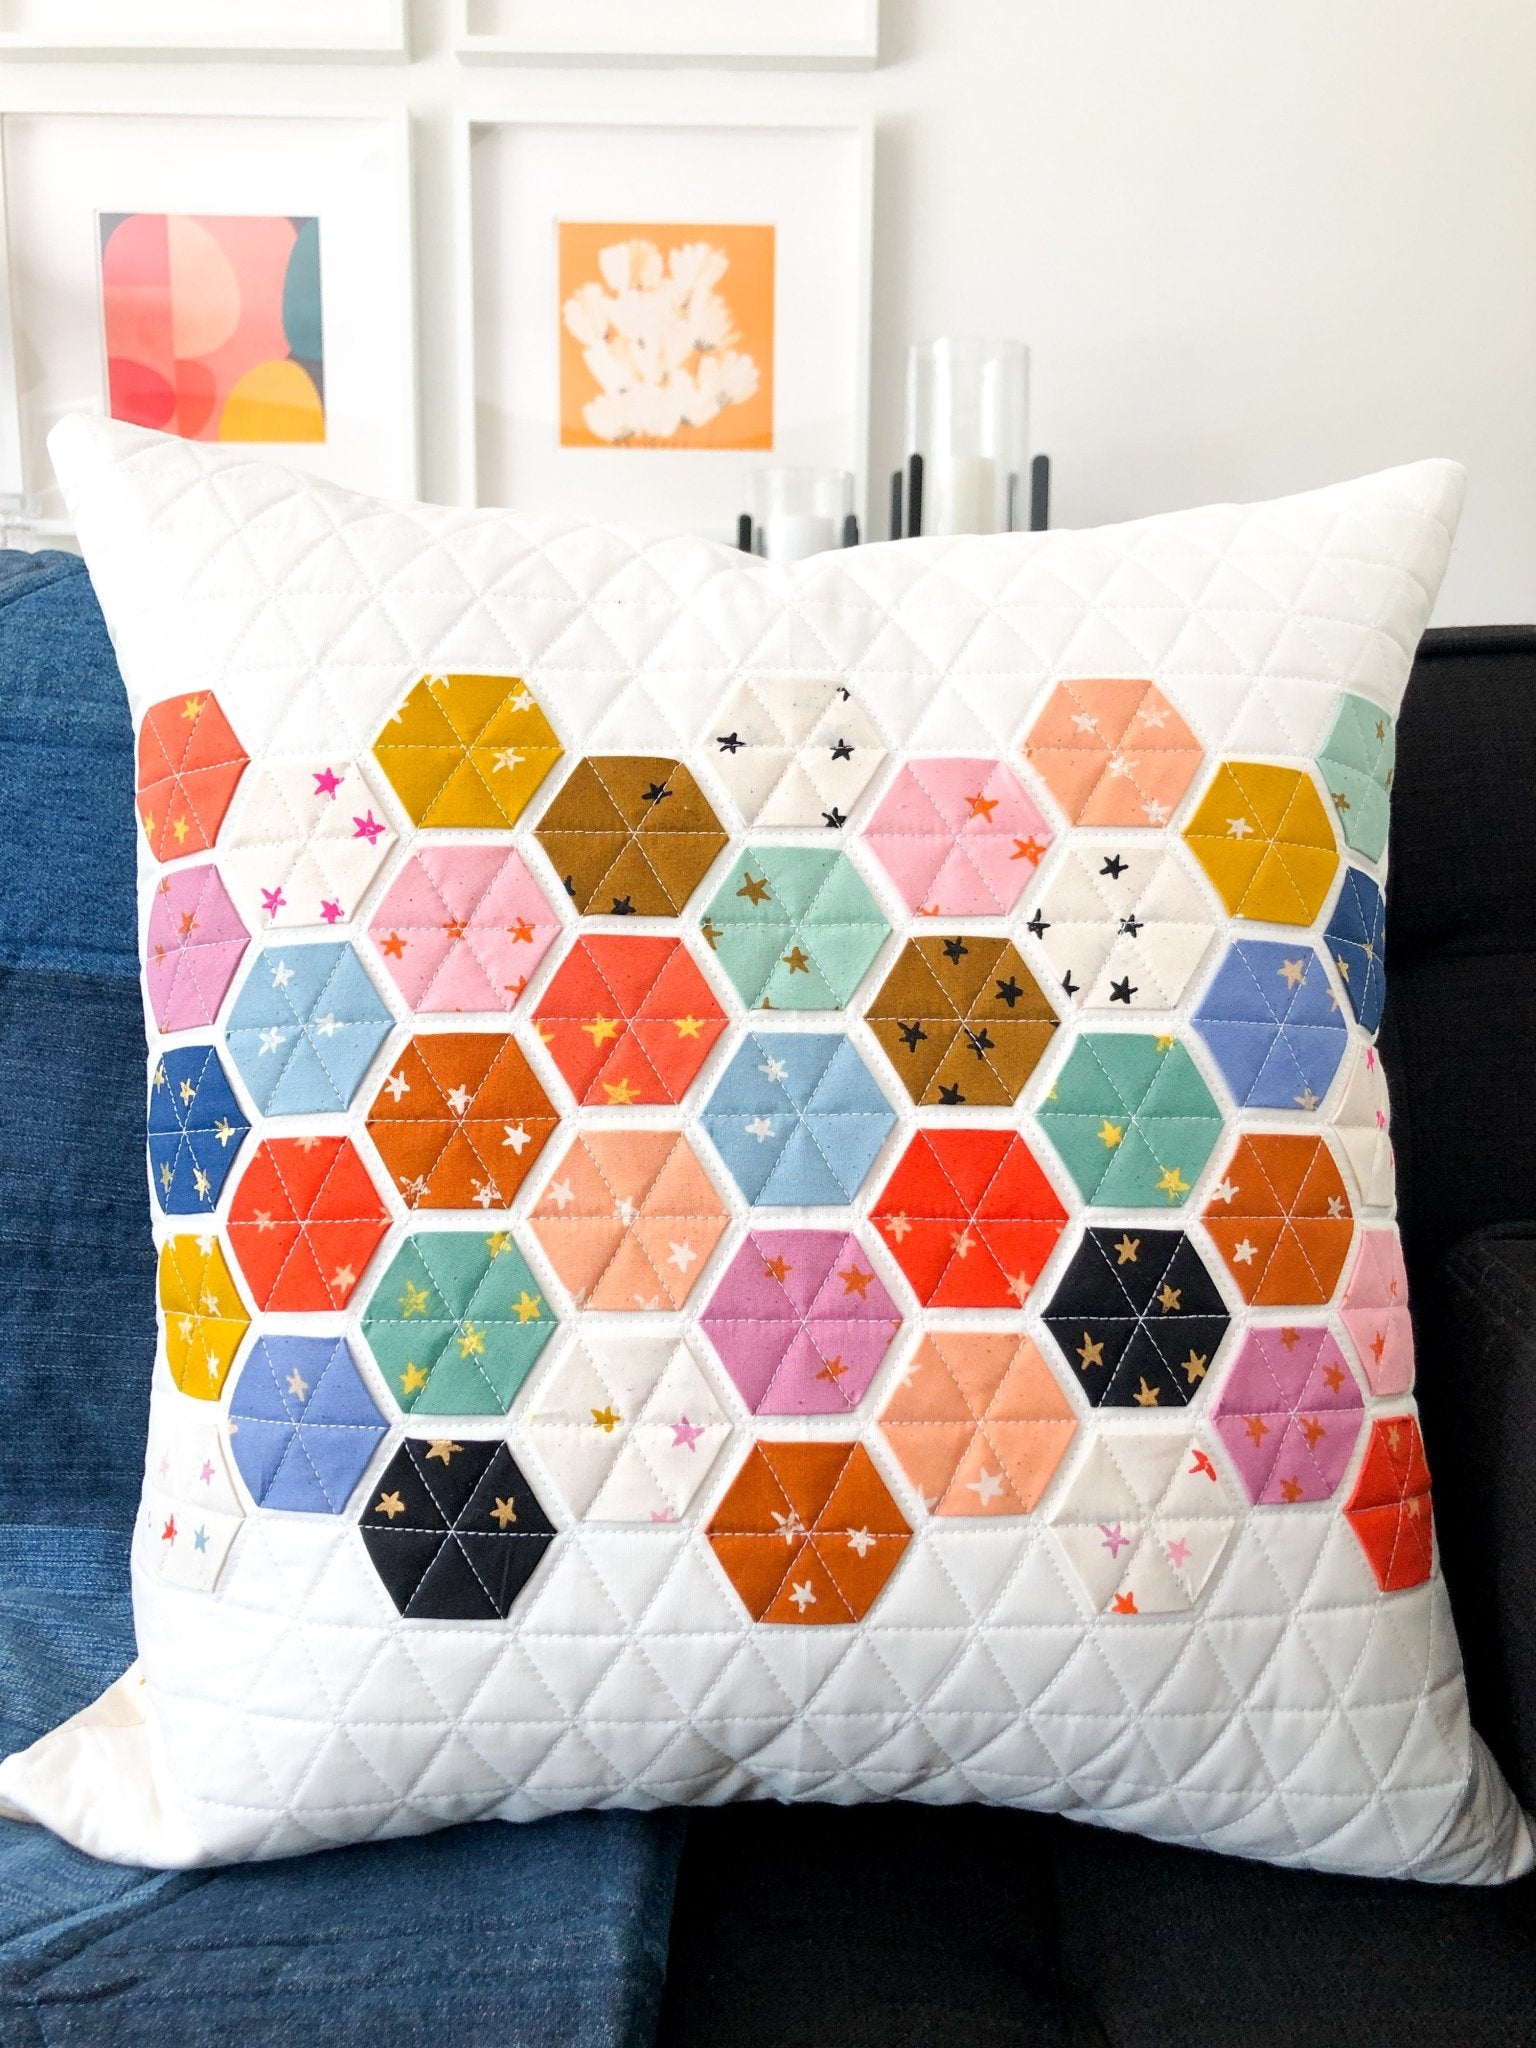 Hexie Pillow / Starry Version | modernhandcraft